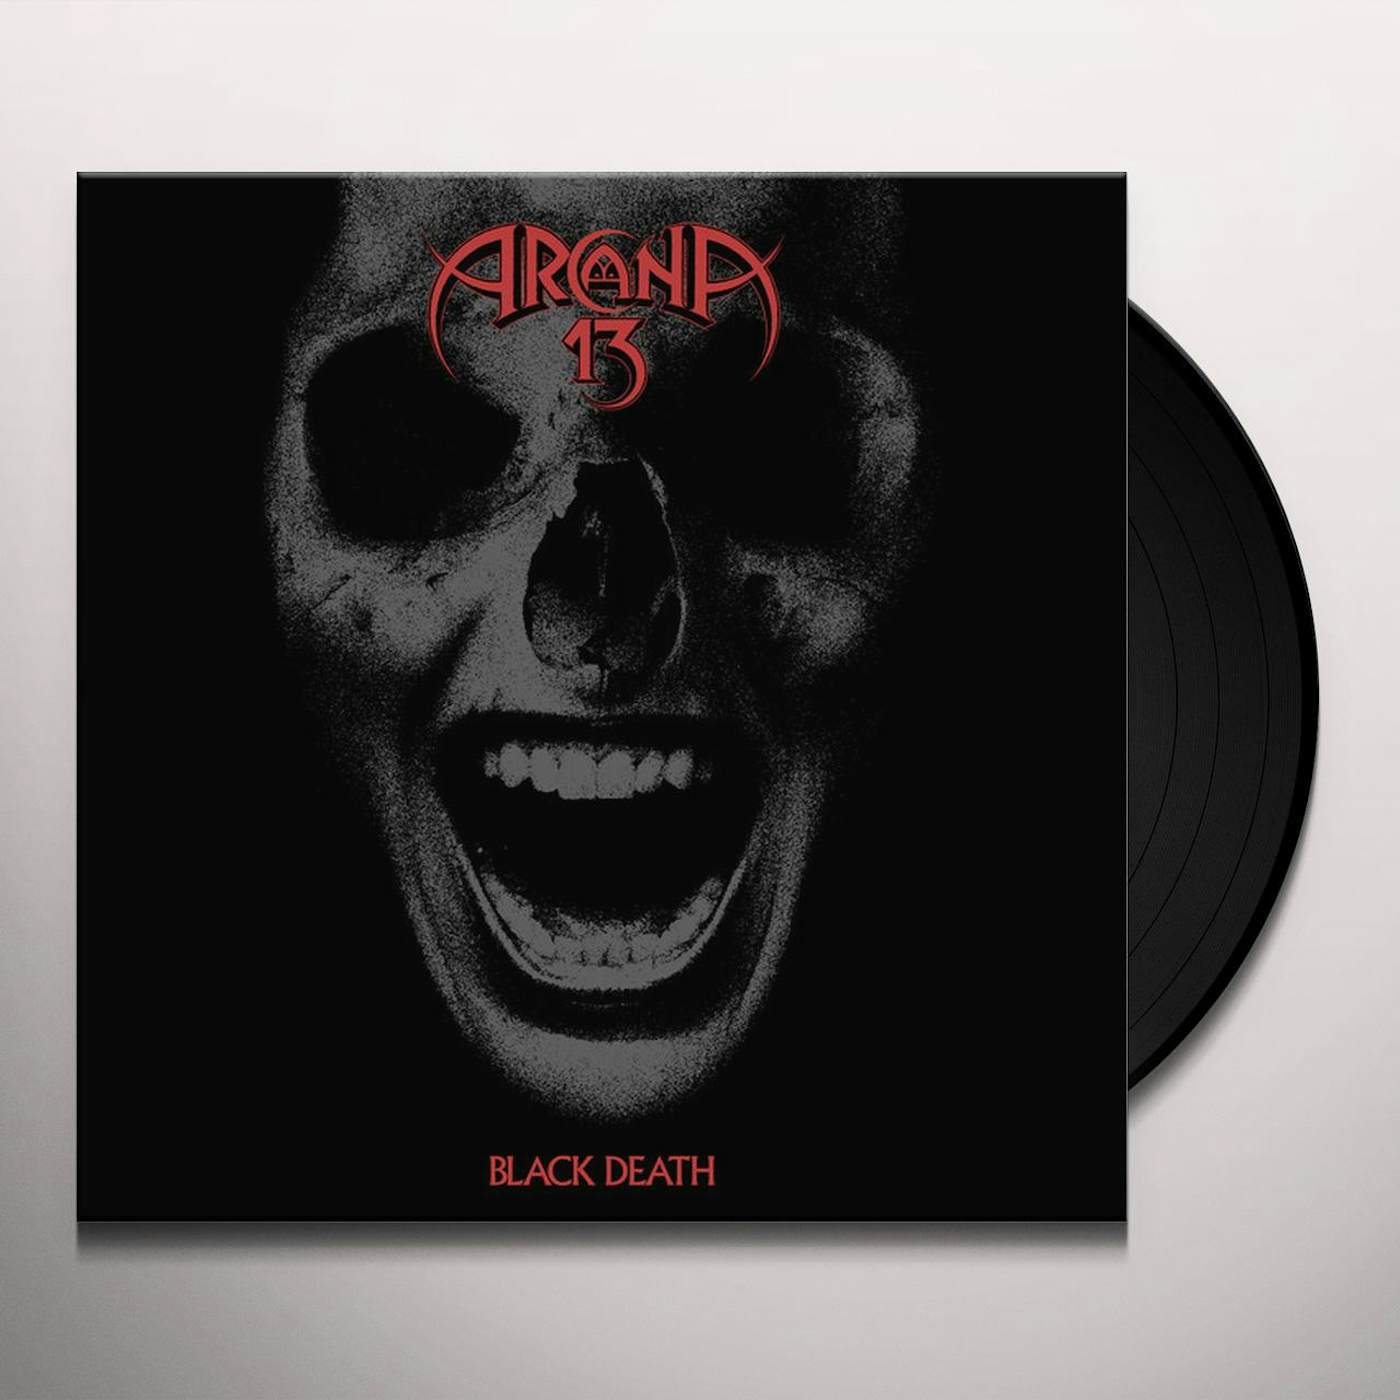 Arcana 13 Black Death Vinyl Record